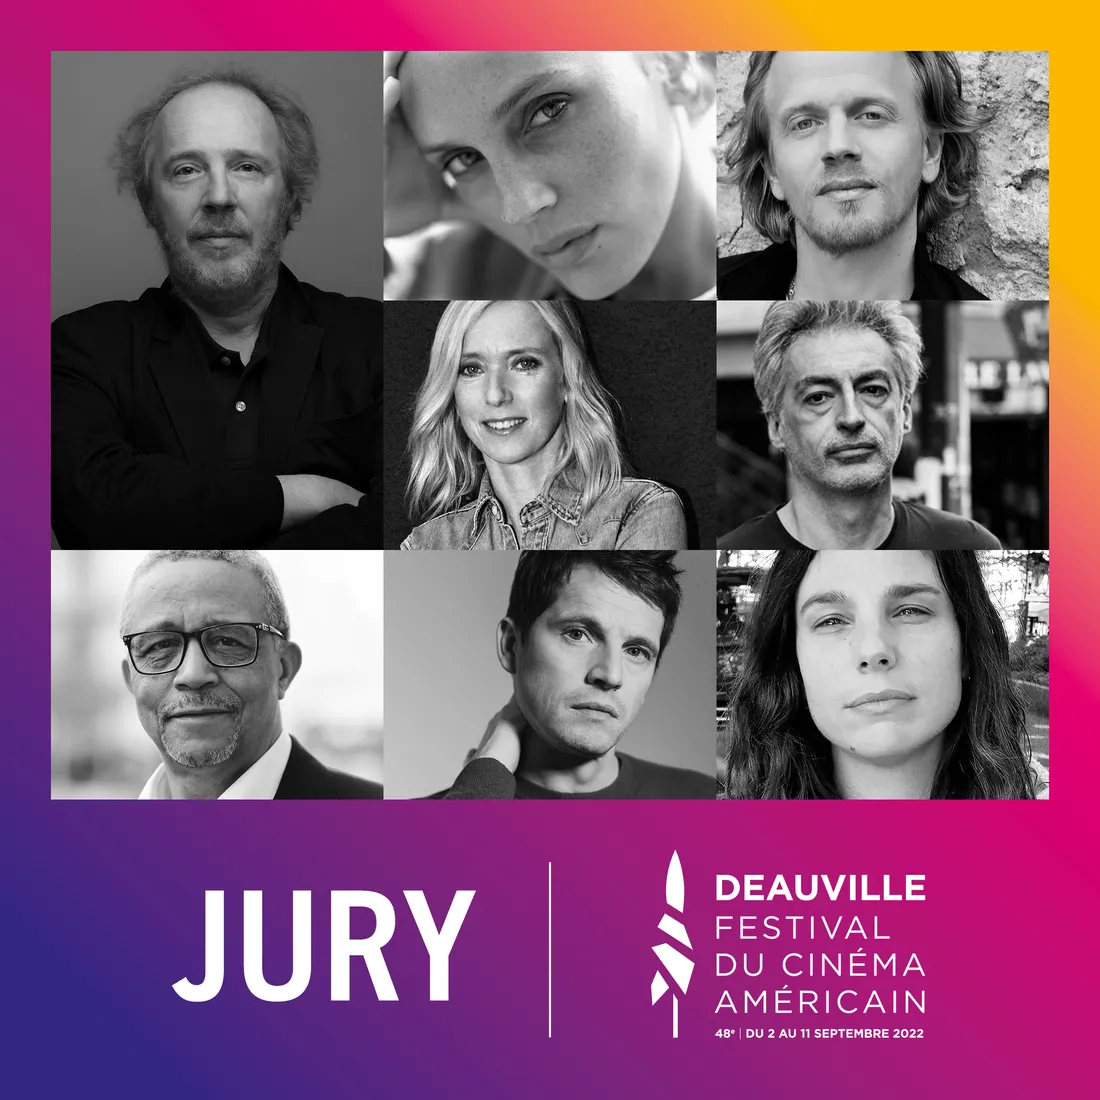 Jury Festival cinéma américain Deauville 2022